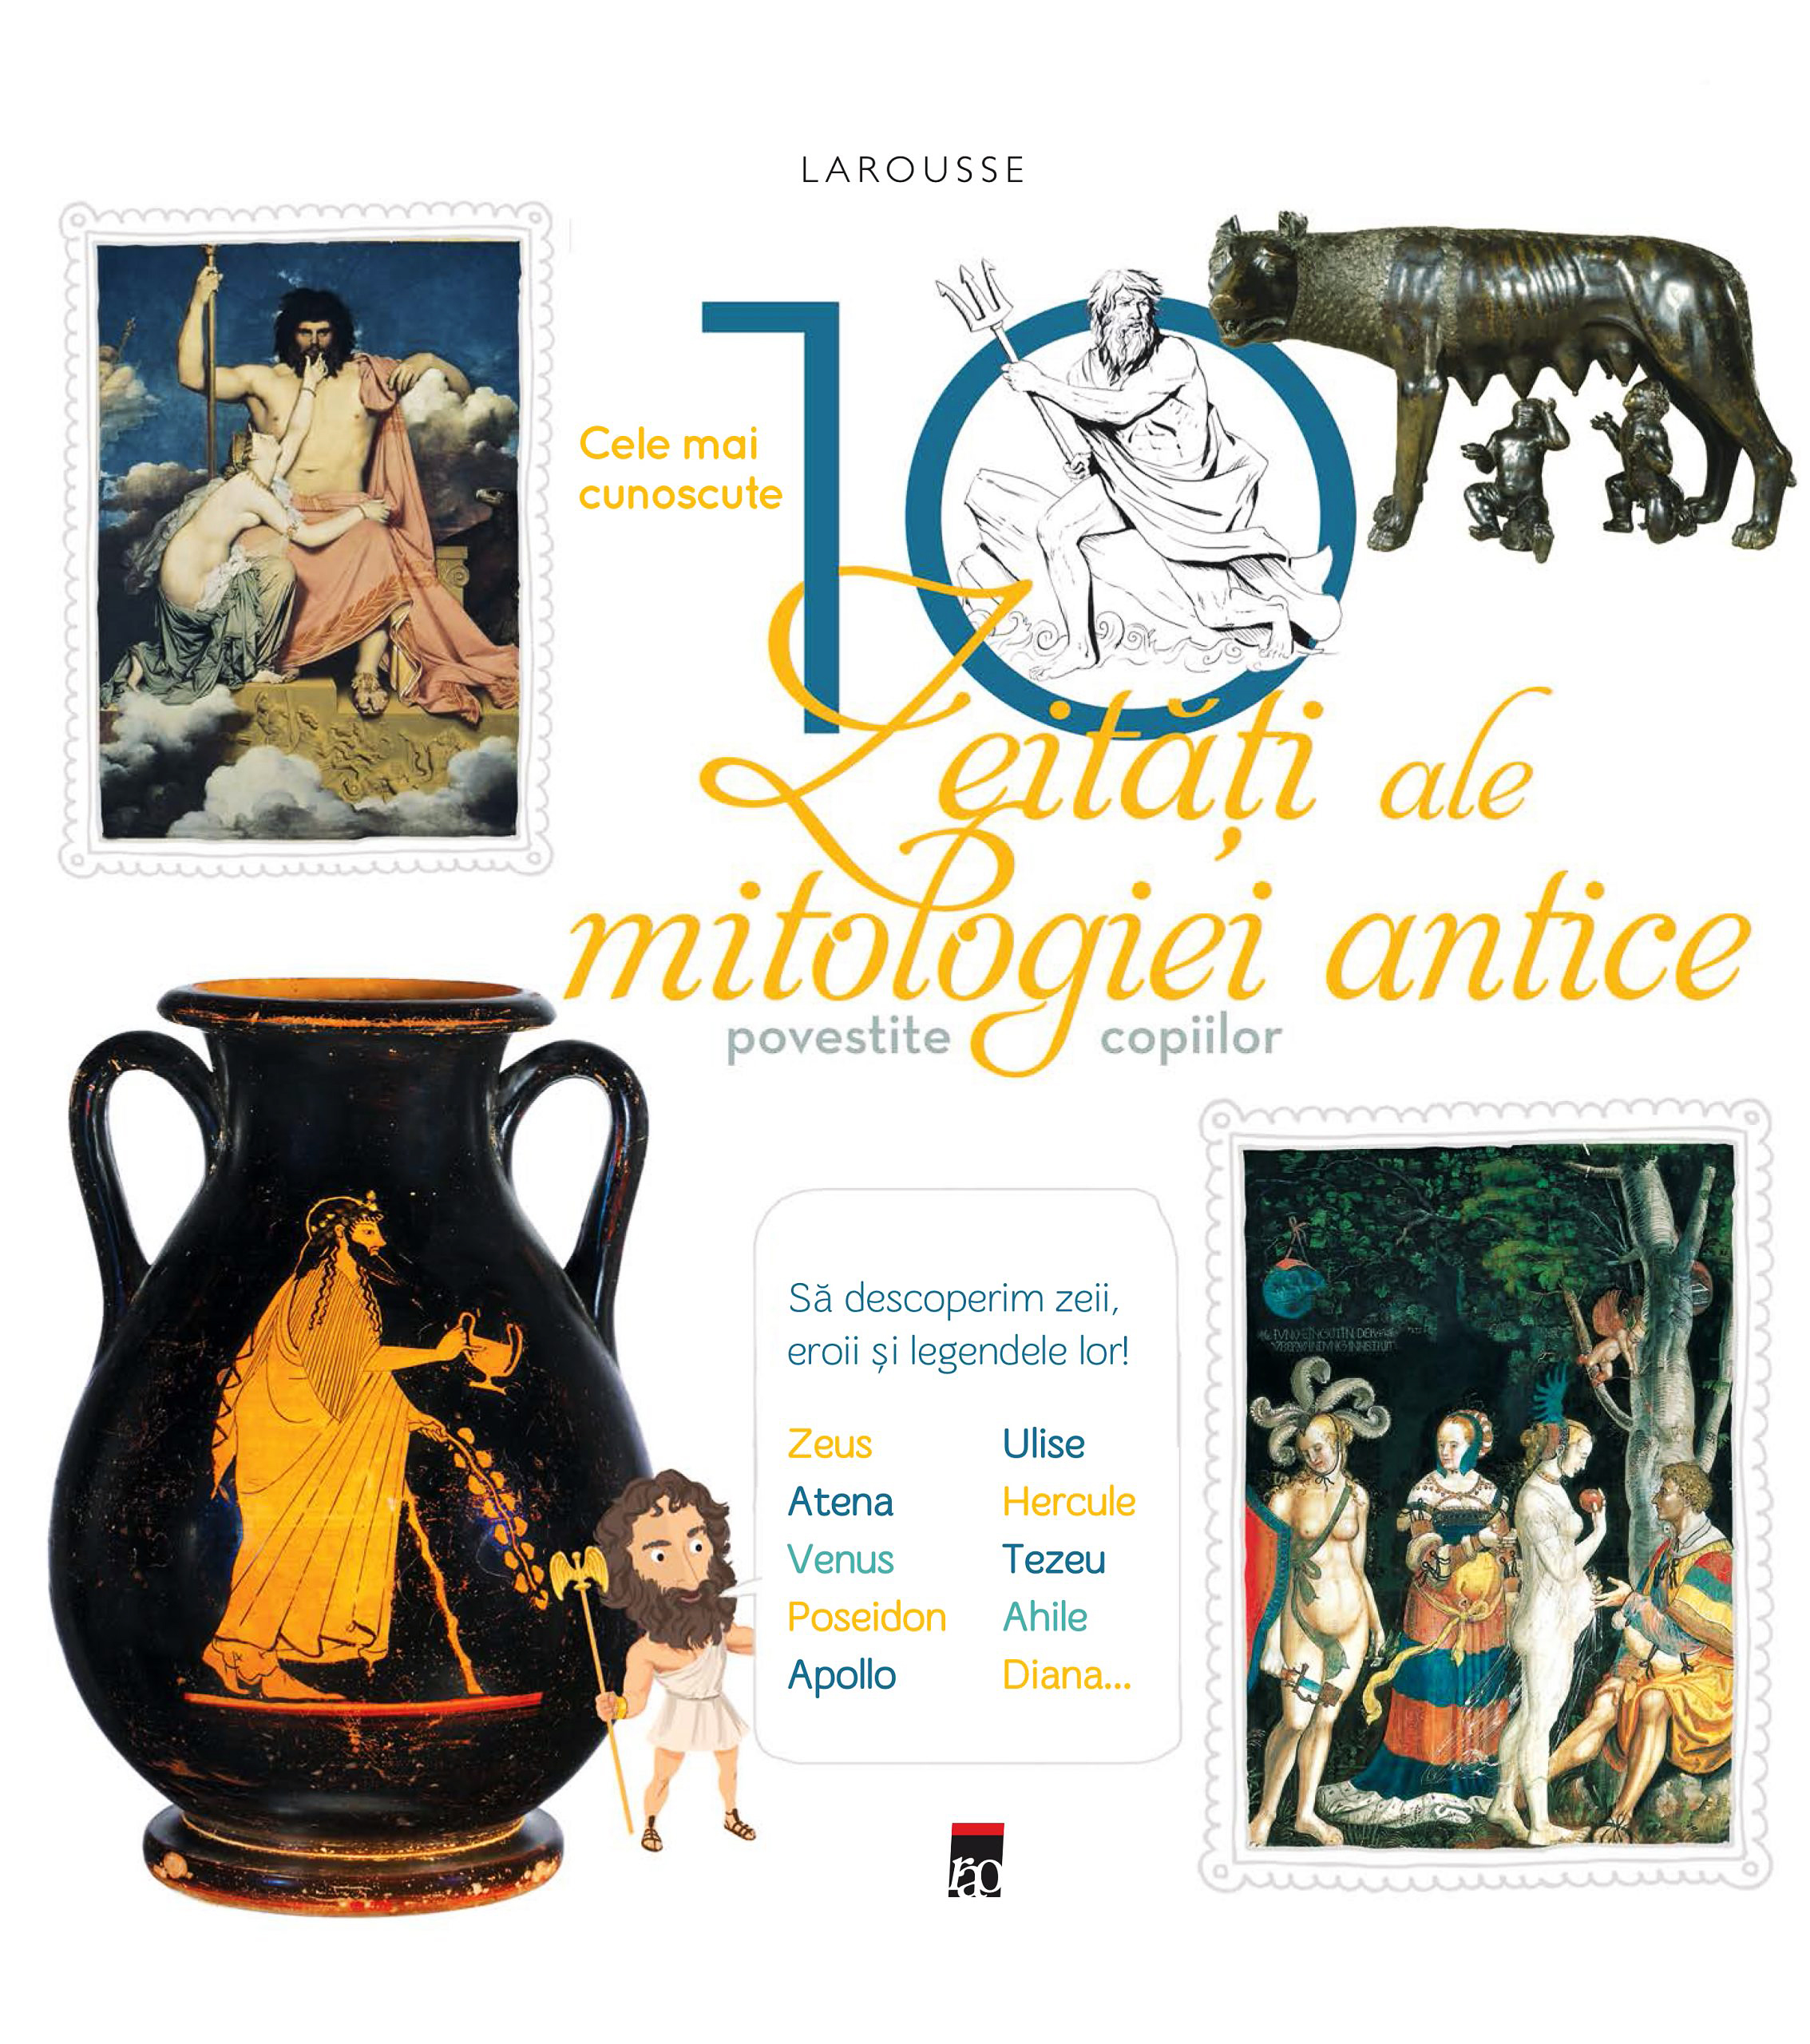 Larousse. Cele mai cunoscute 10 zeitati ale mitologiei antice povestite copiilor | de la carturesti imagine 2021